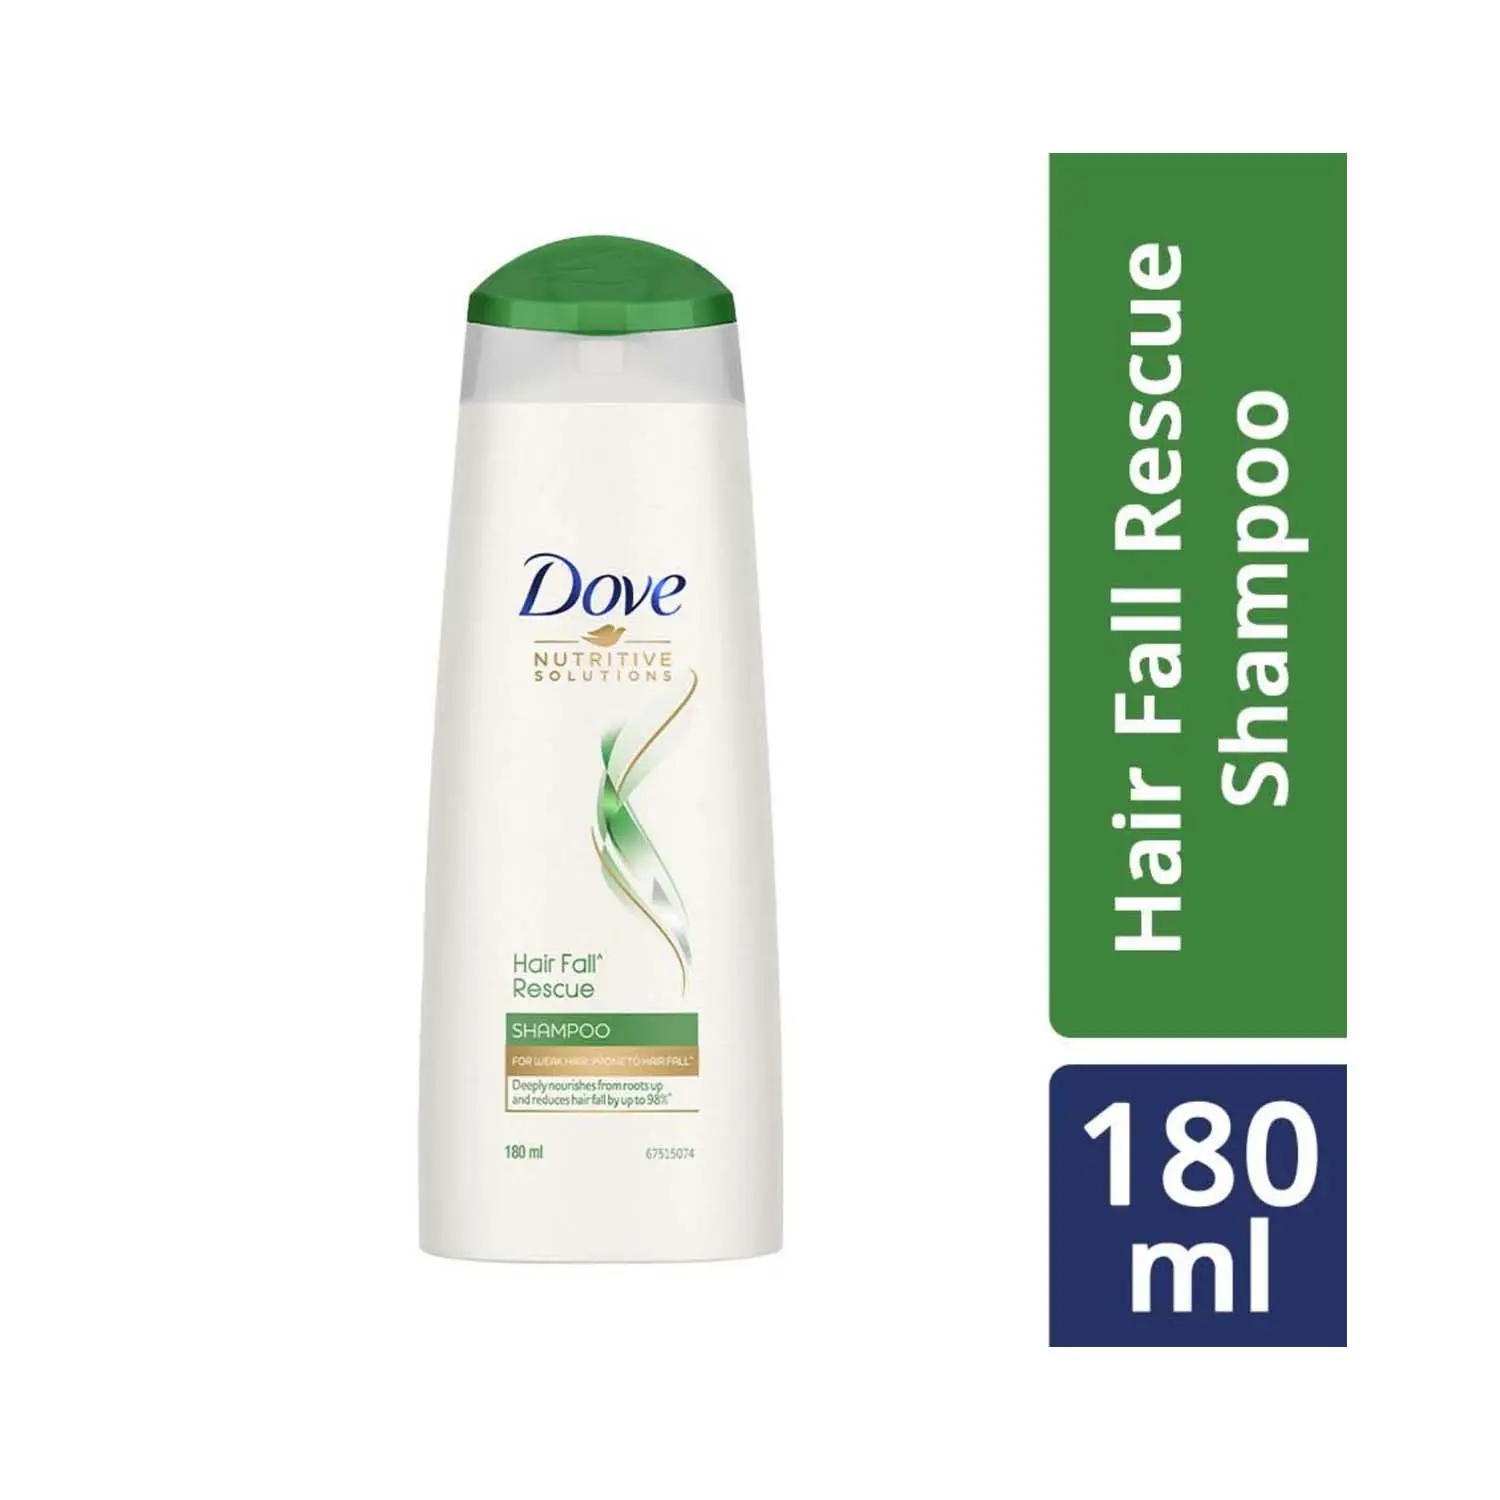 Dove | Dove Hair Fall Rescue Hair Shampoo (180ml)